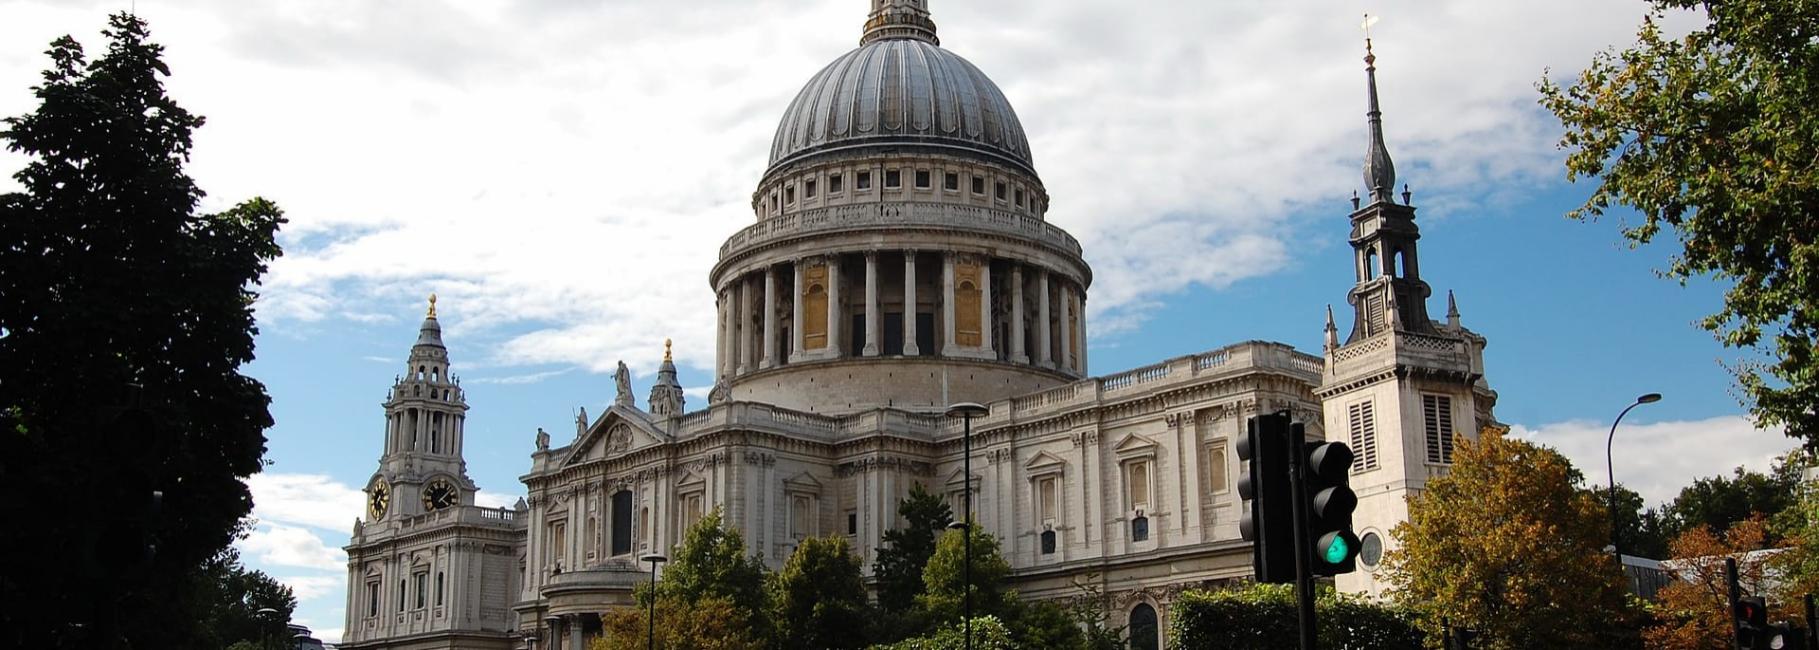 london religious trip header slk fe